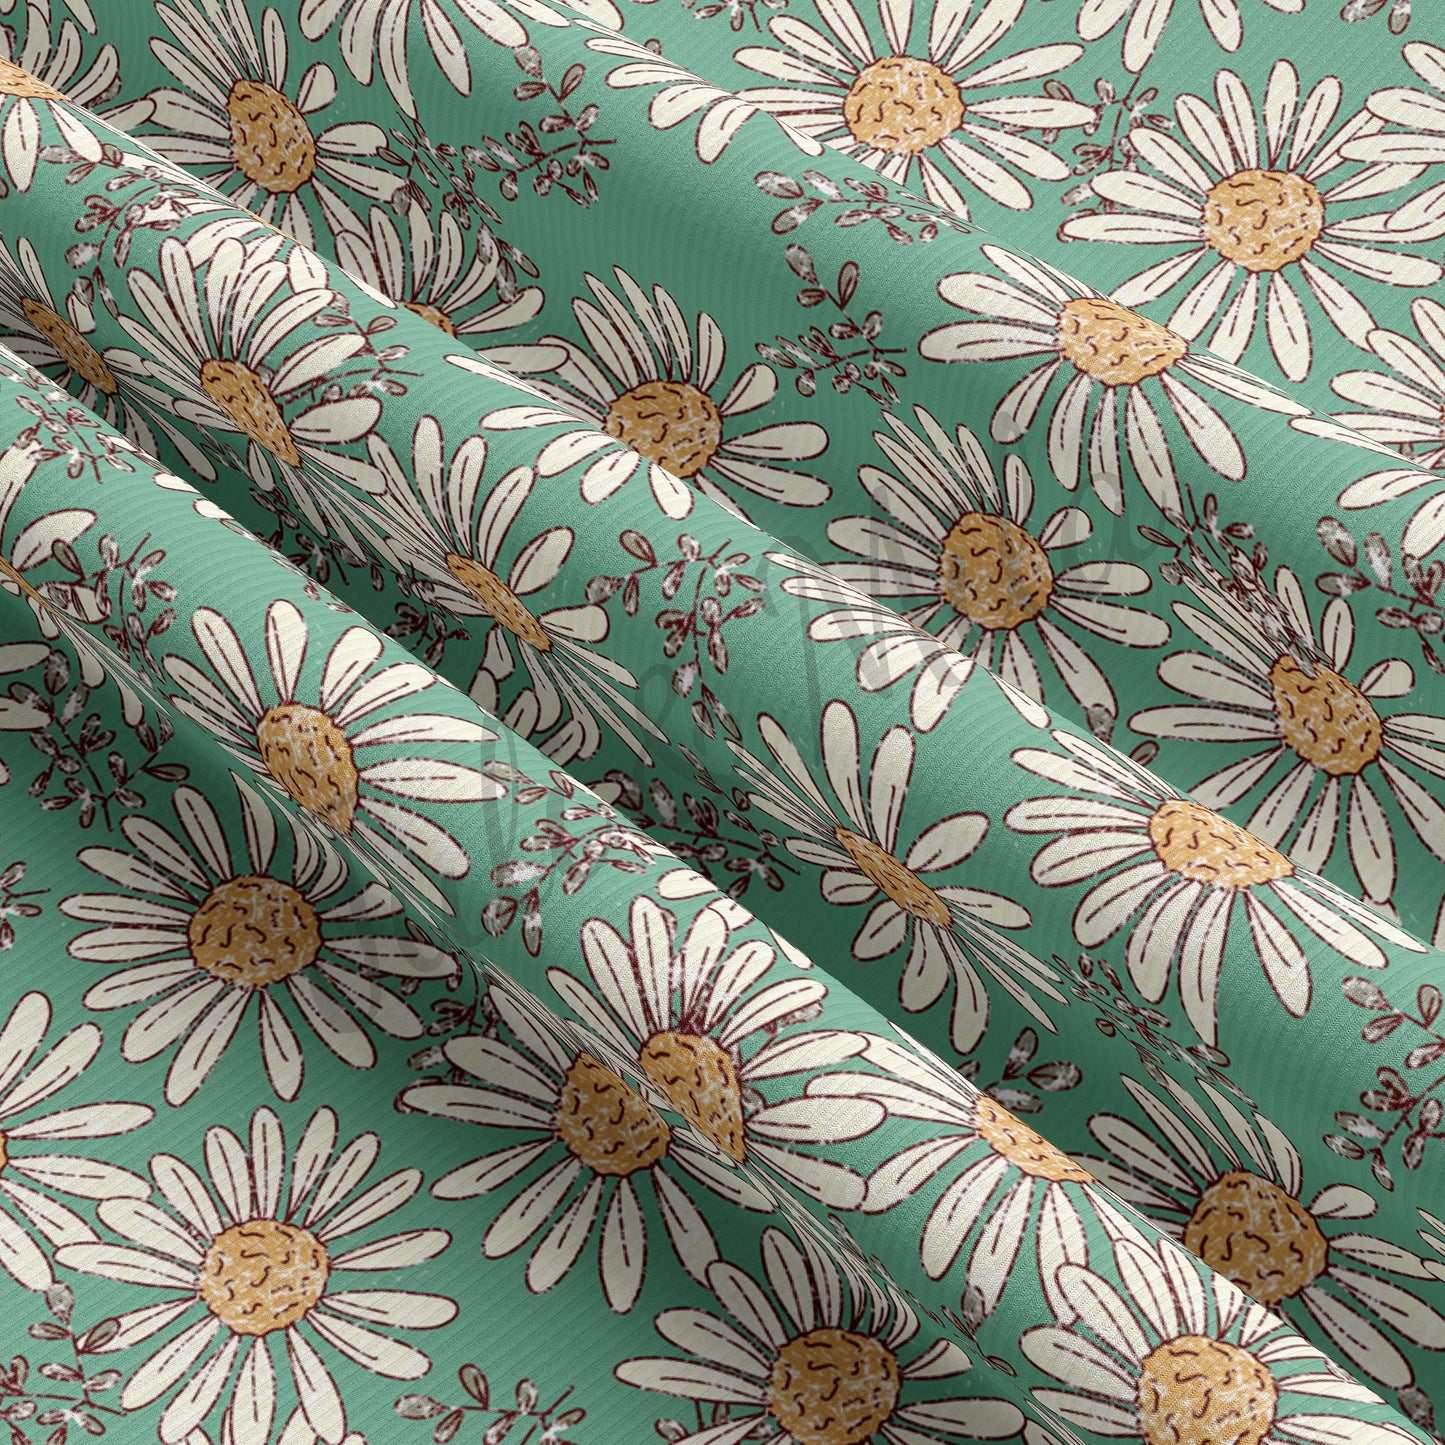 Rib Knit Fabric Floral66